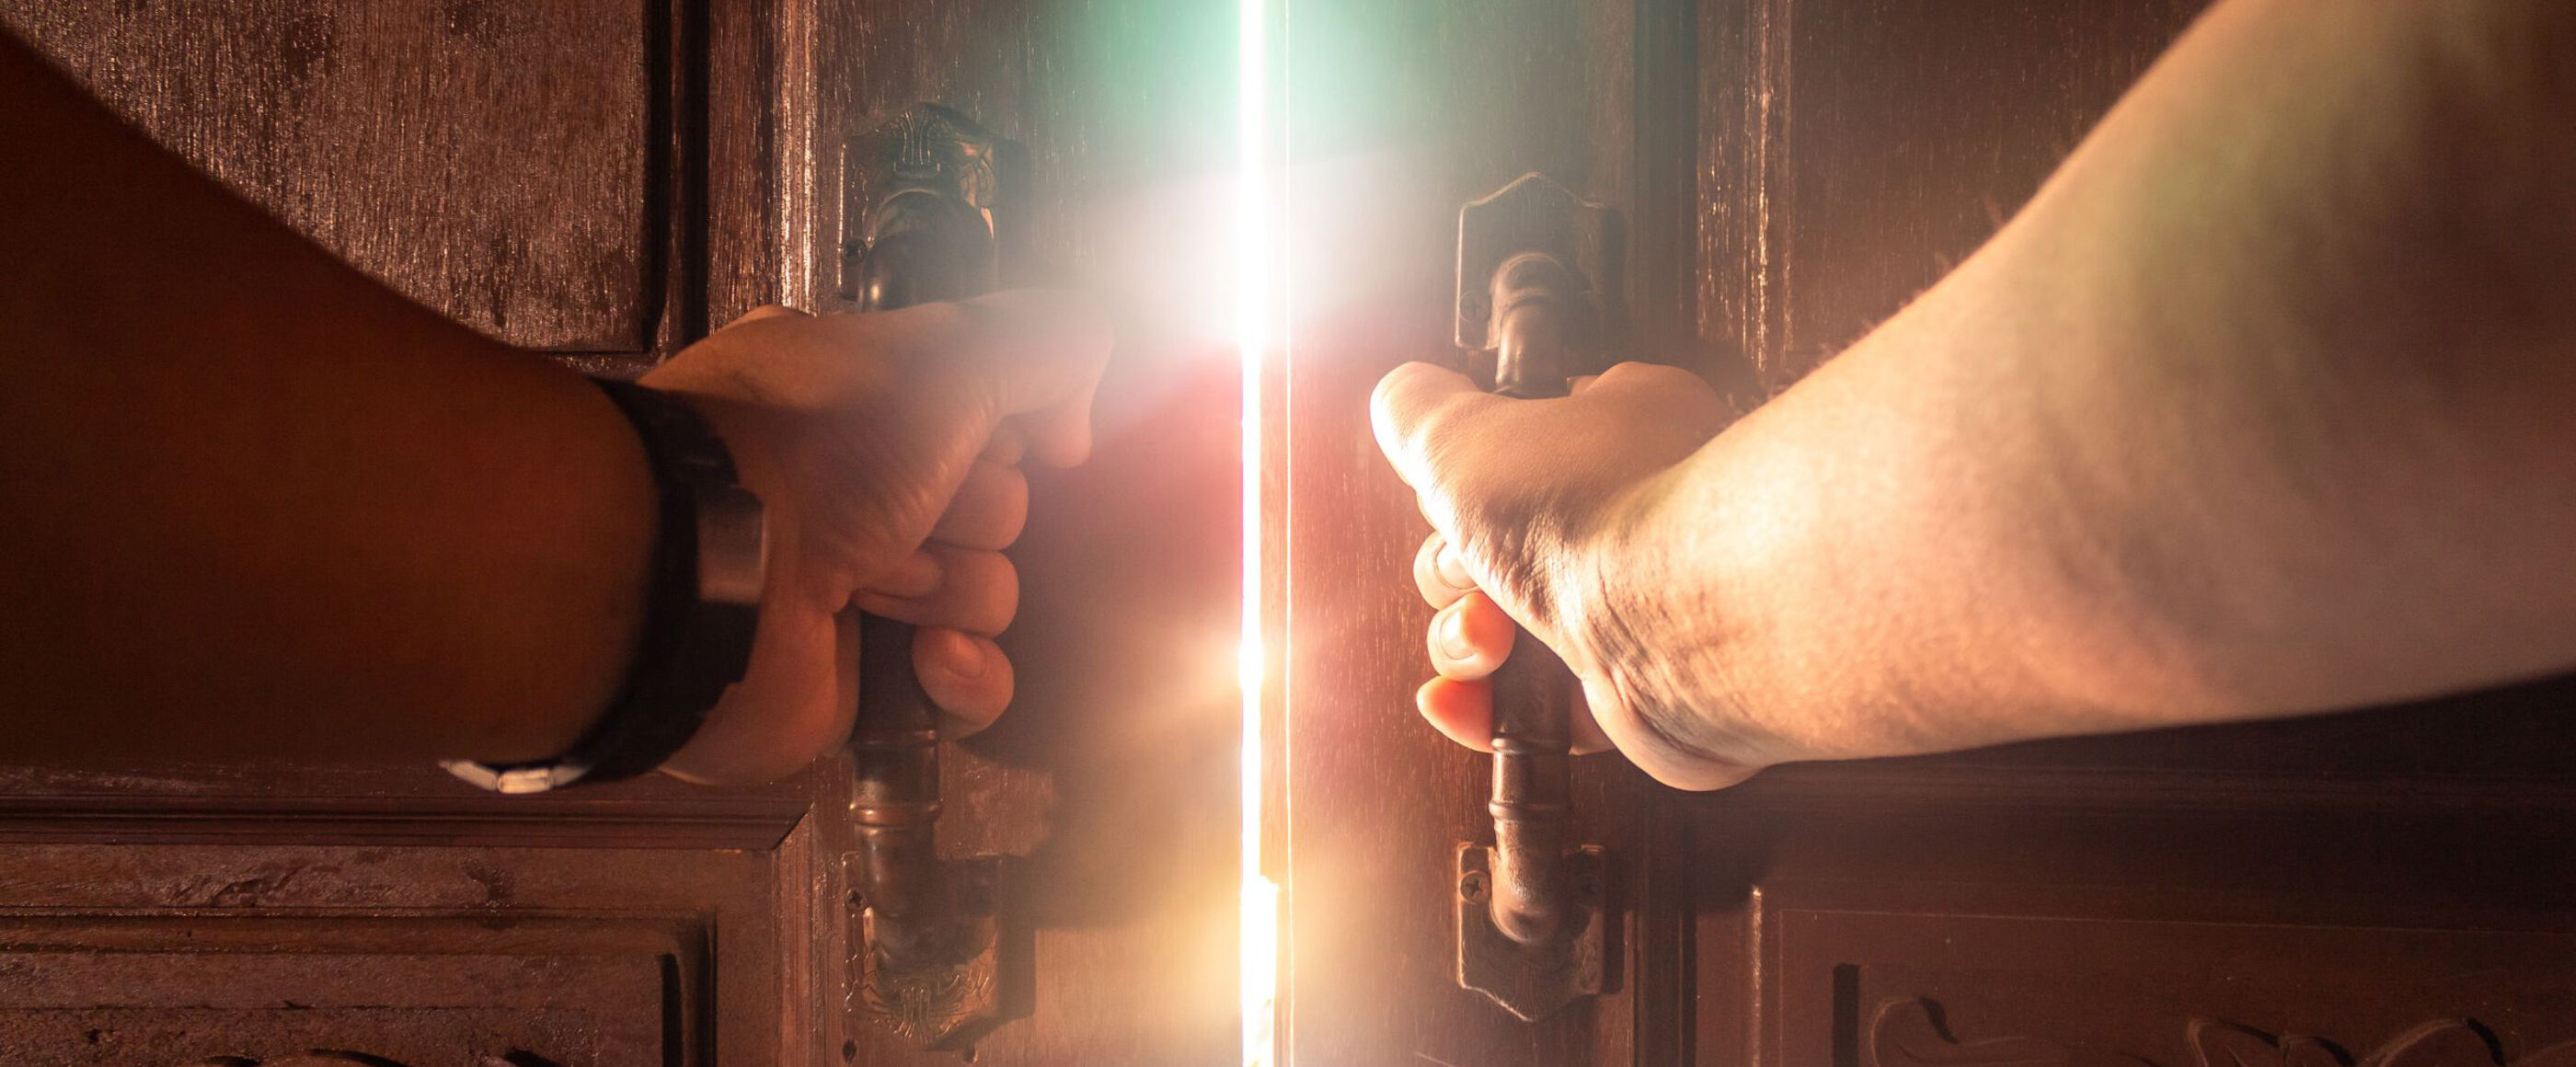 Zwei Hände öffnen eine Tür. Durch den offenen Türspalt dringt Sonnenlicht.